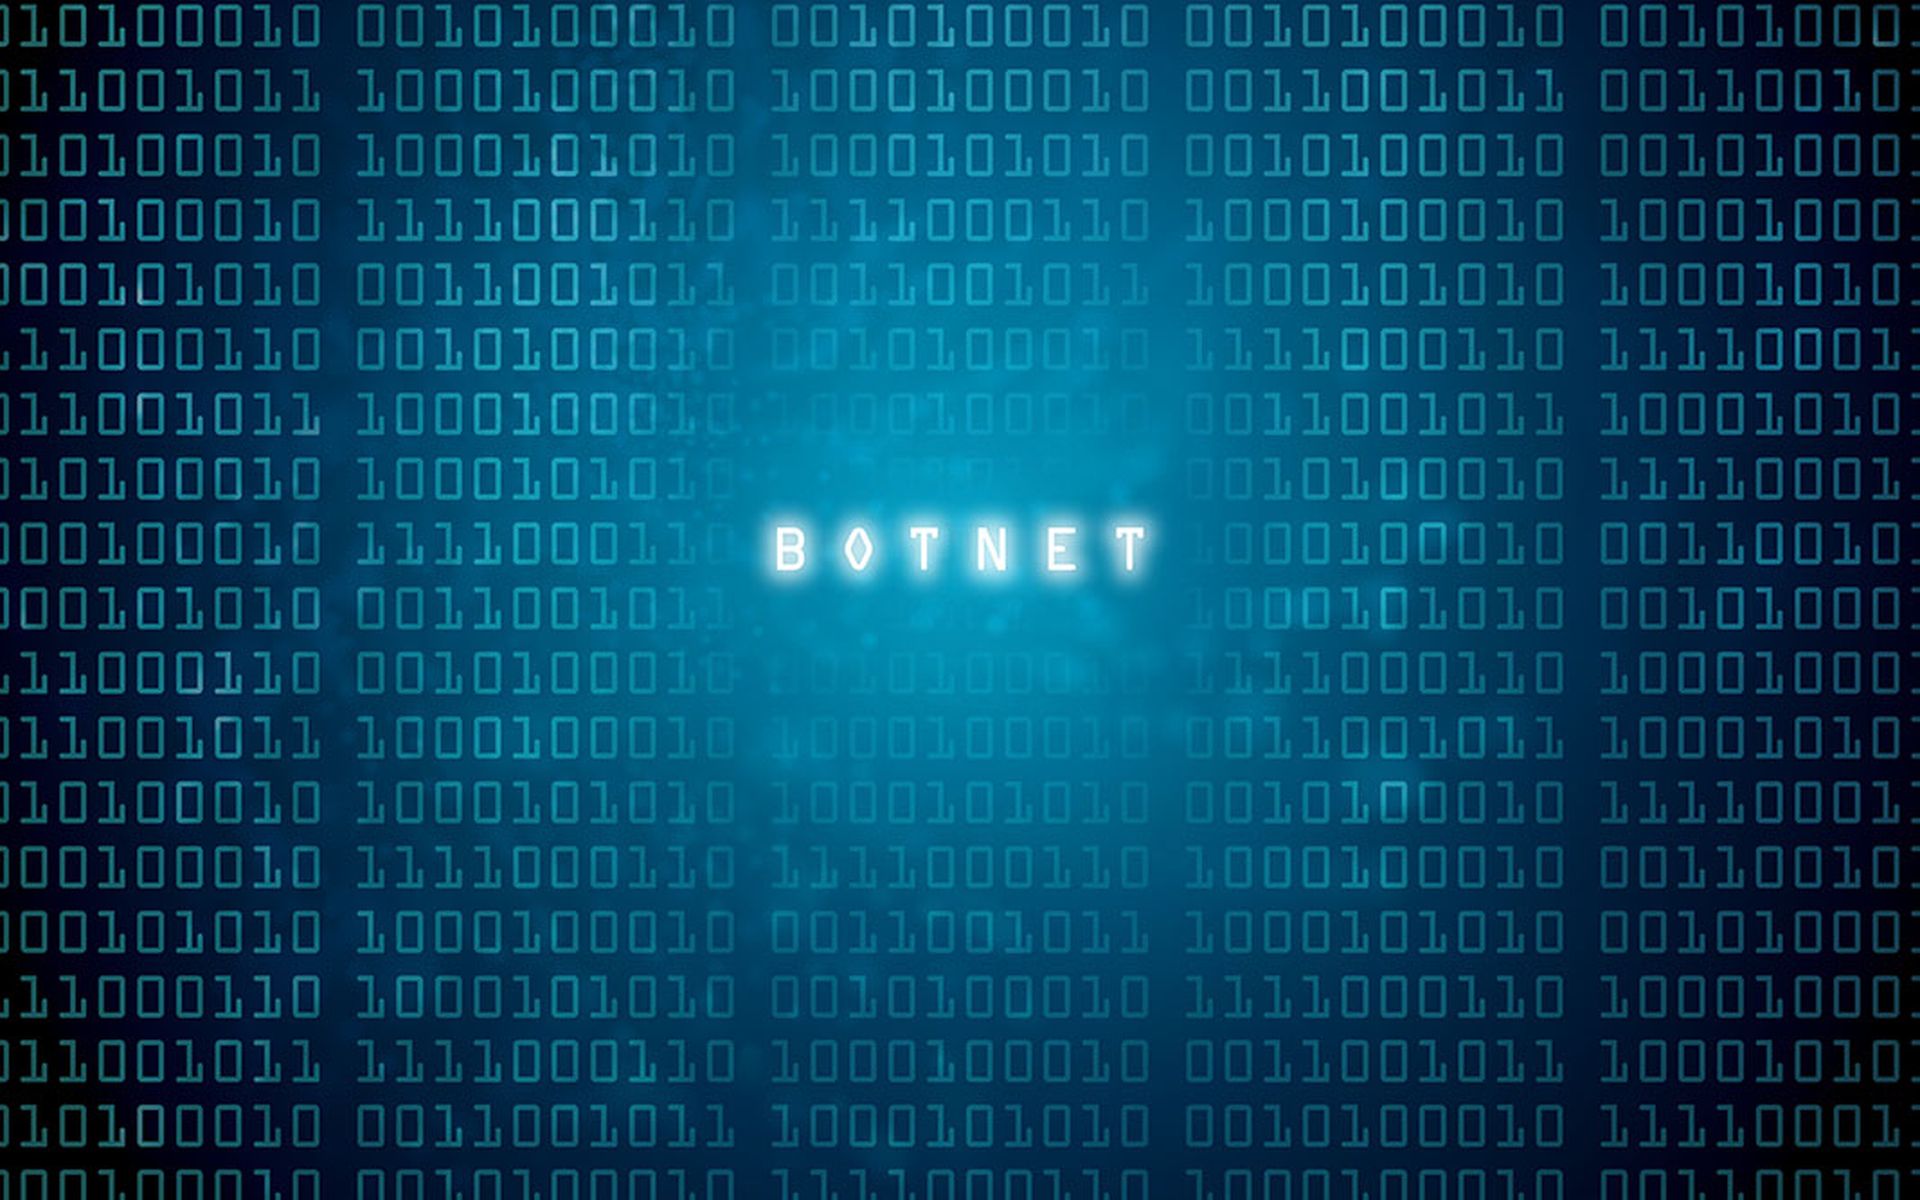 botnet bot-net computer virus